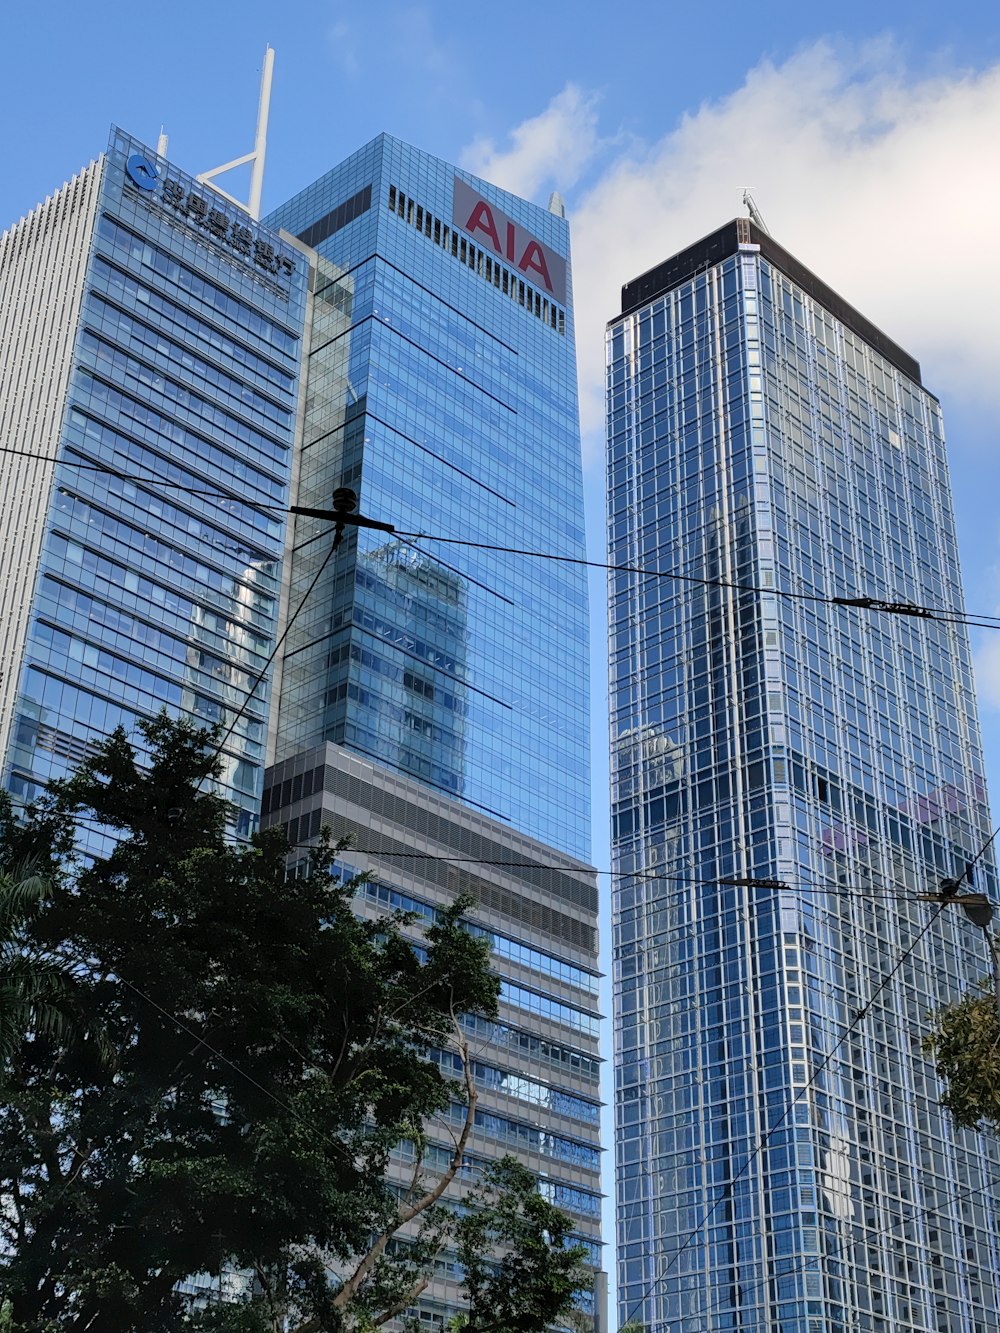 隣り合った高層ビルが2棟